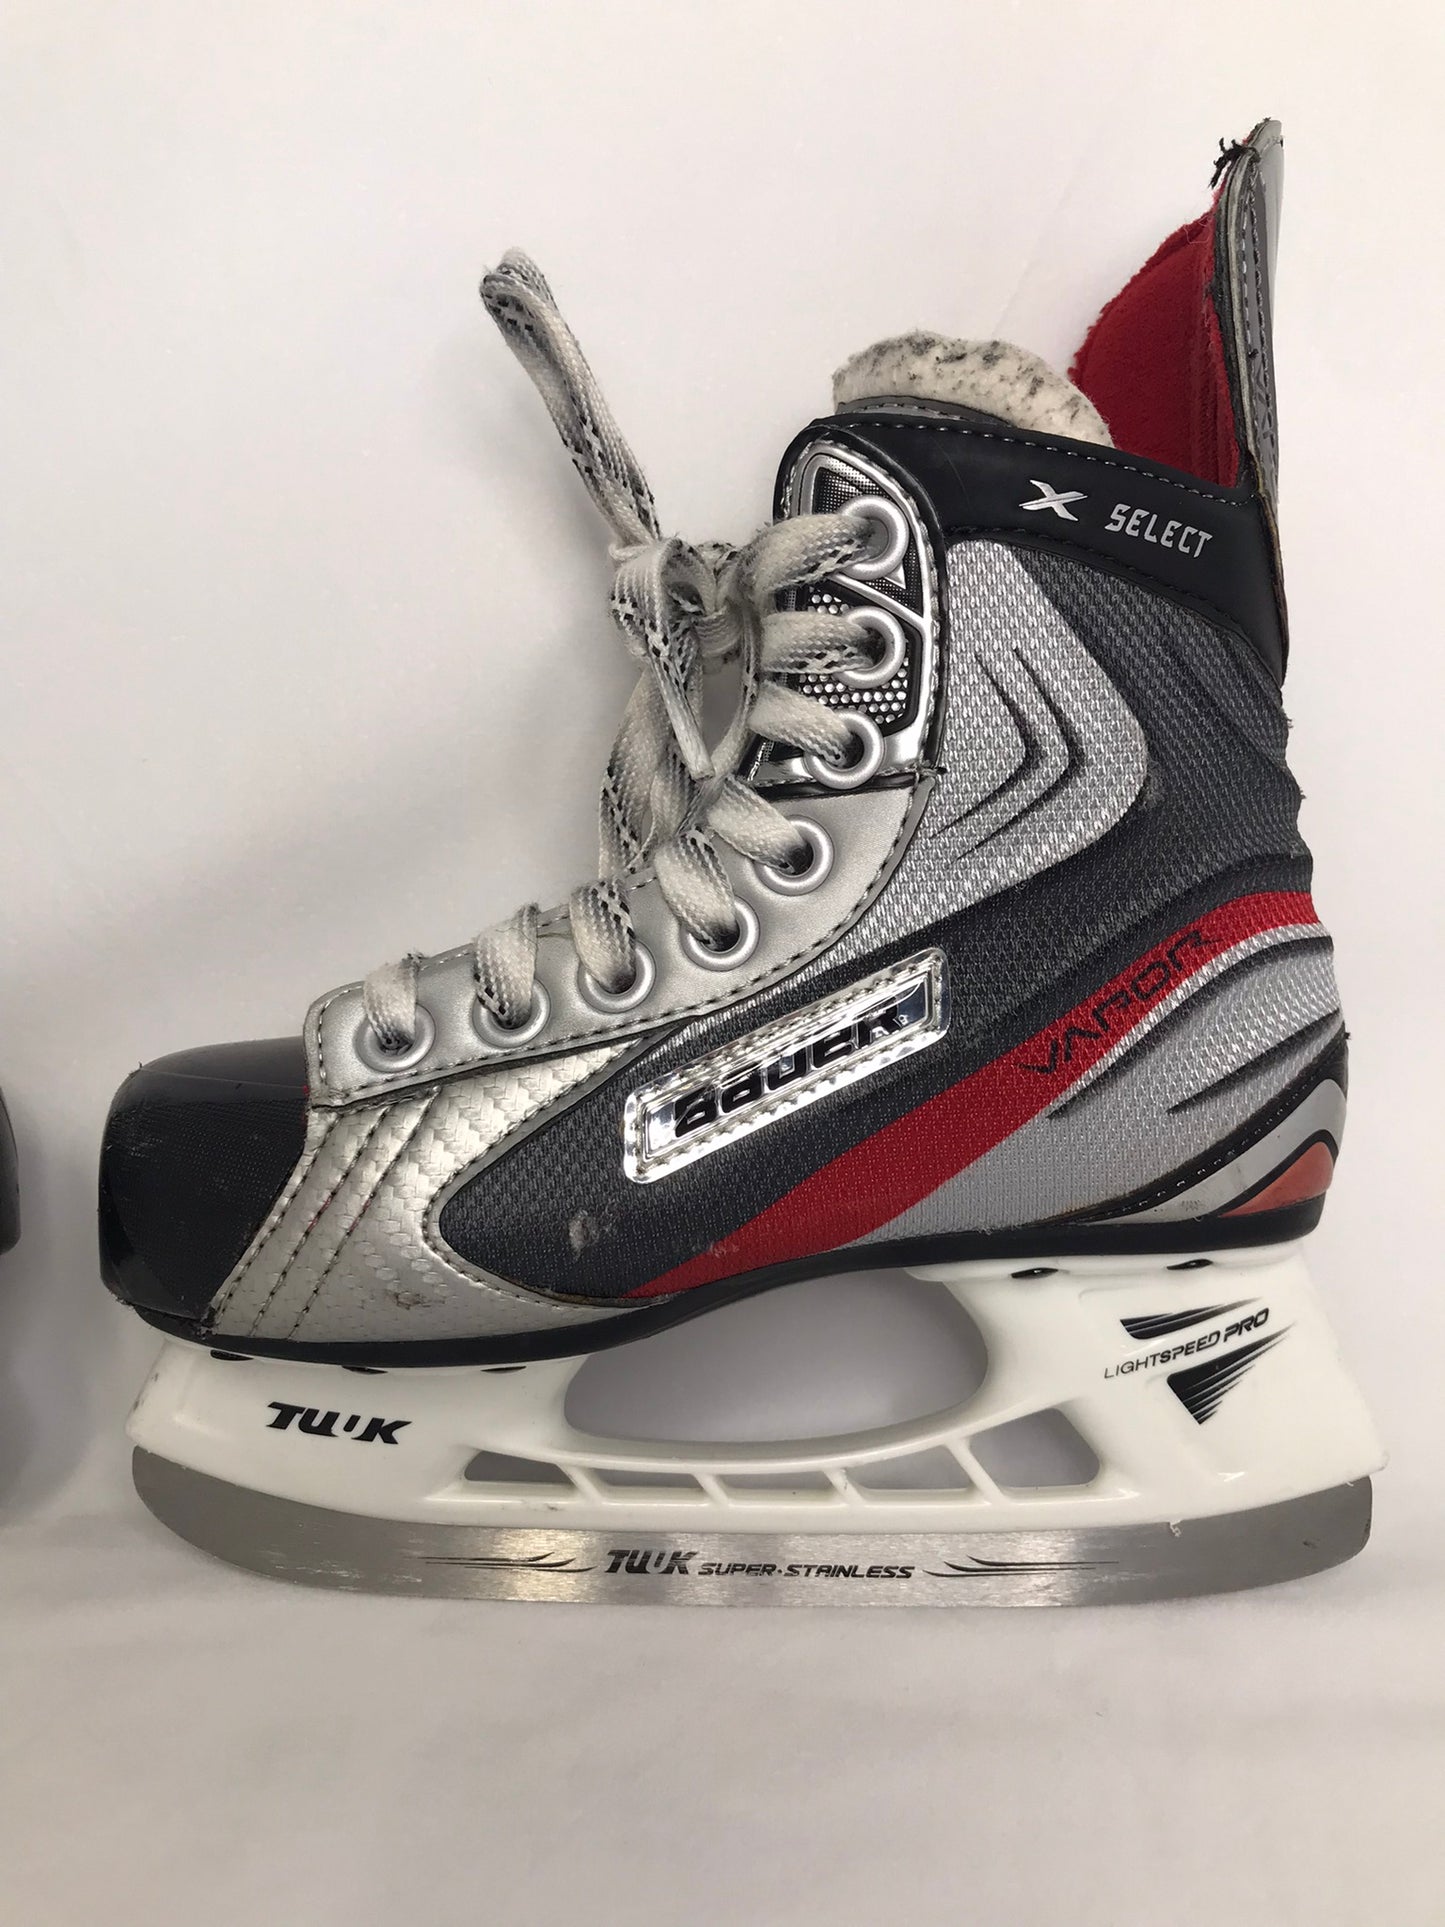 Hockey Skates Child Size 13 Shoe Size Bauer Vapor  x Edge Excellent